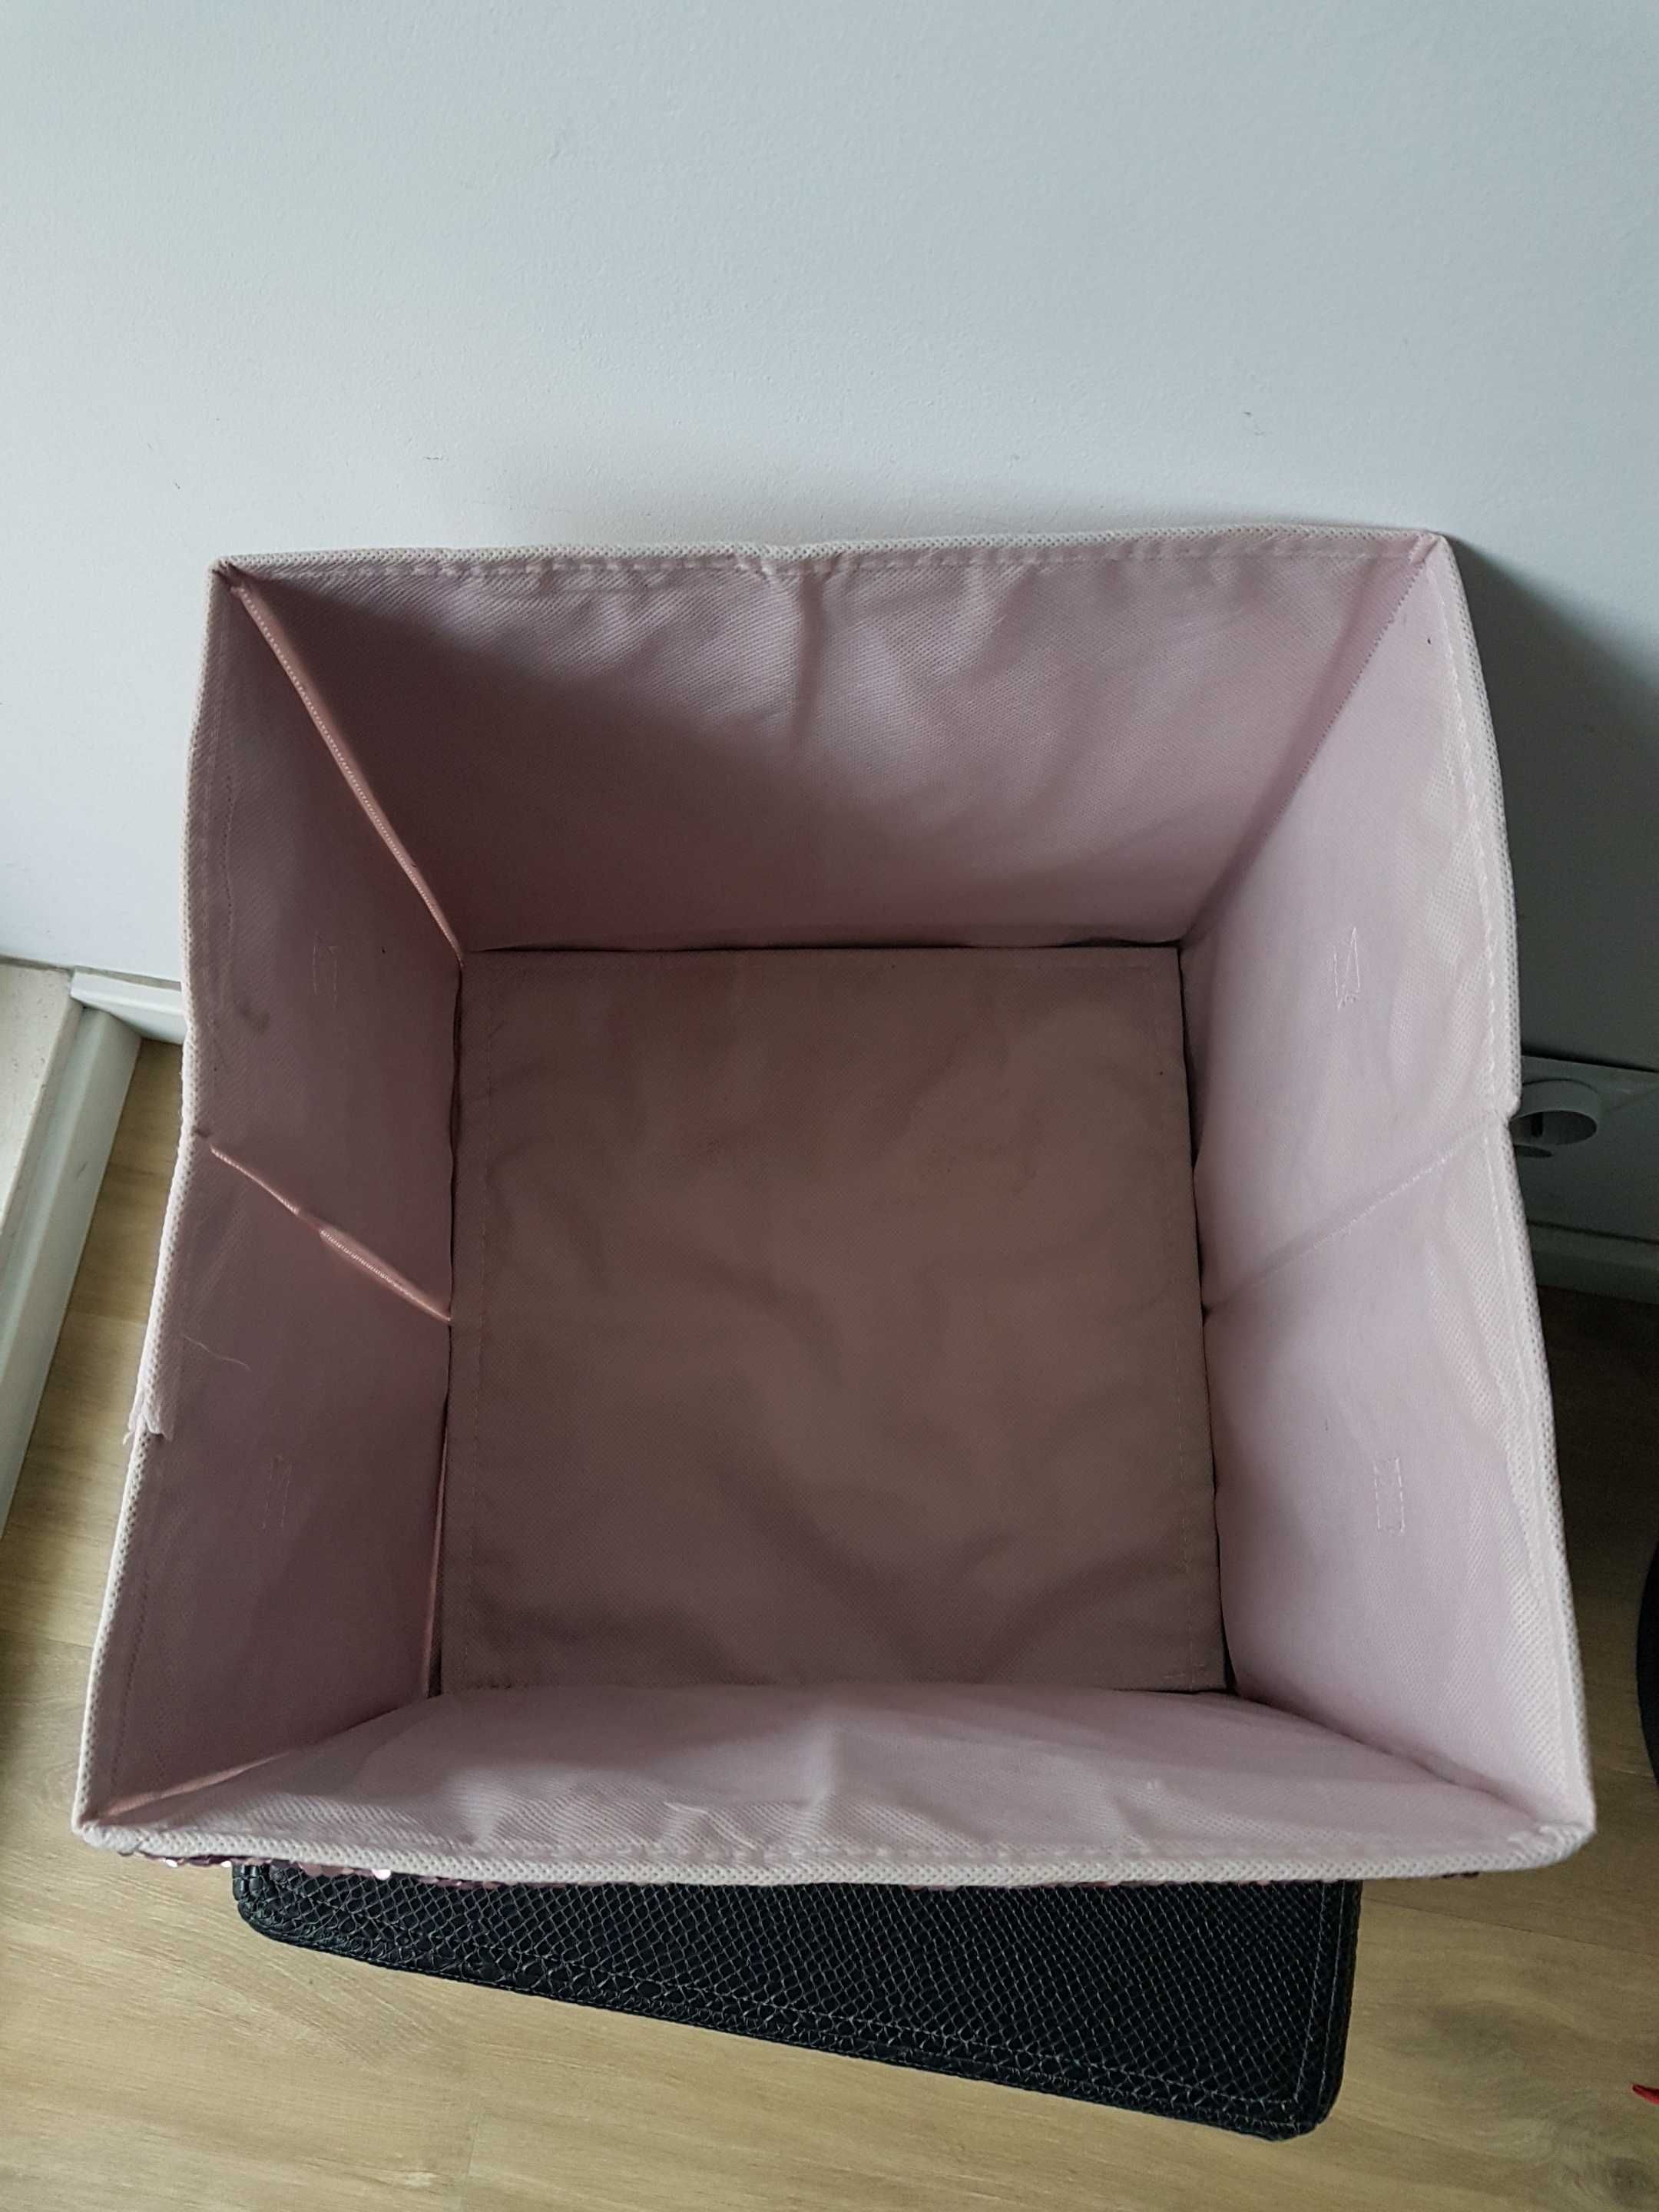 Różowy tekstylny pojemnik do przechowywania zmieniane cekiny tęcza